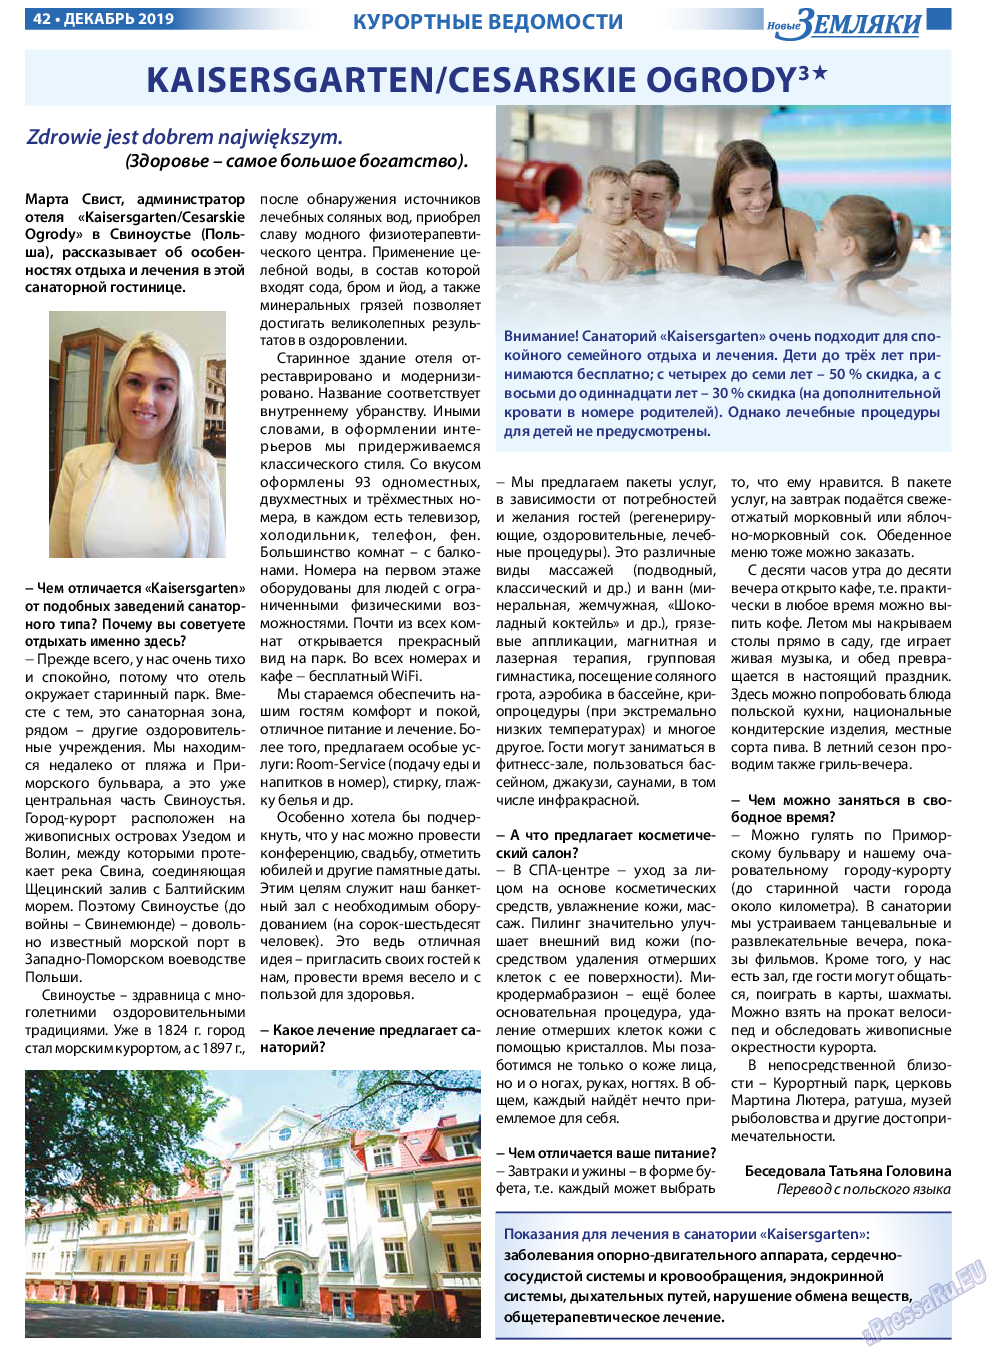 Новые Земляки, газета. 2019 №12 стр.42